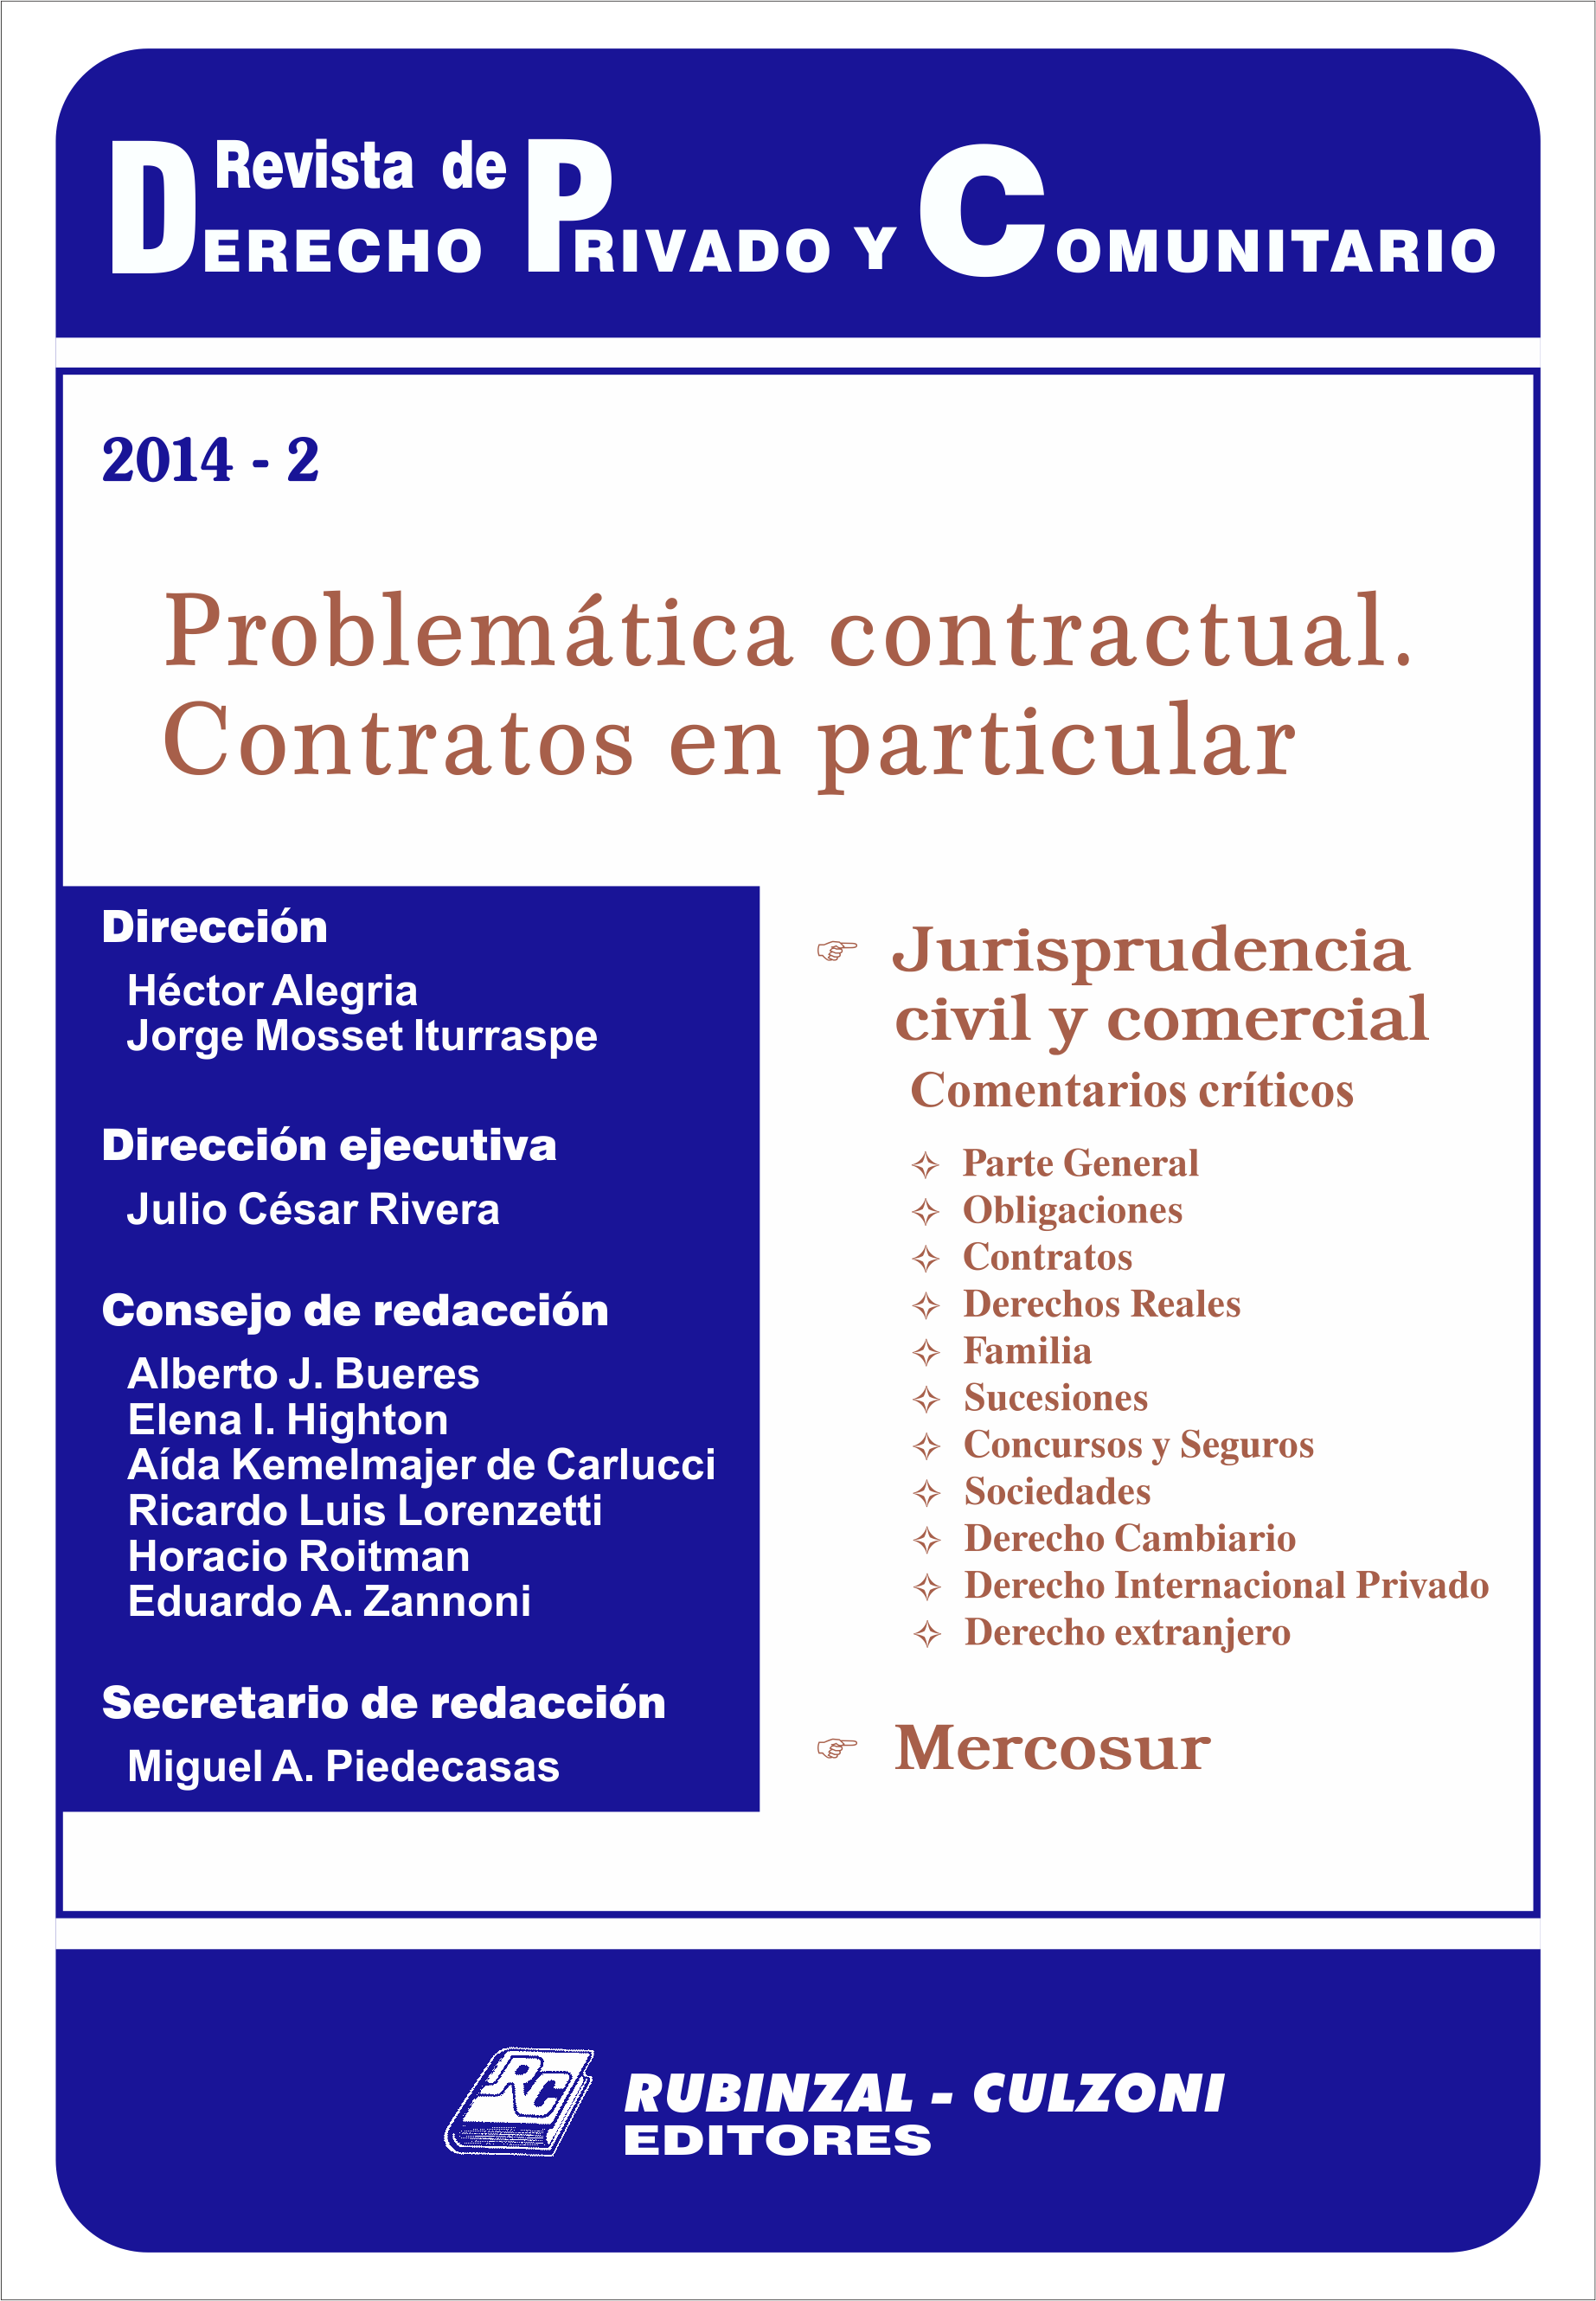 Revista de Derecho Privado y Comunitario - Problemática contractual